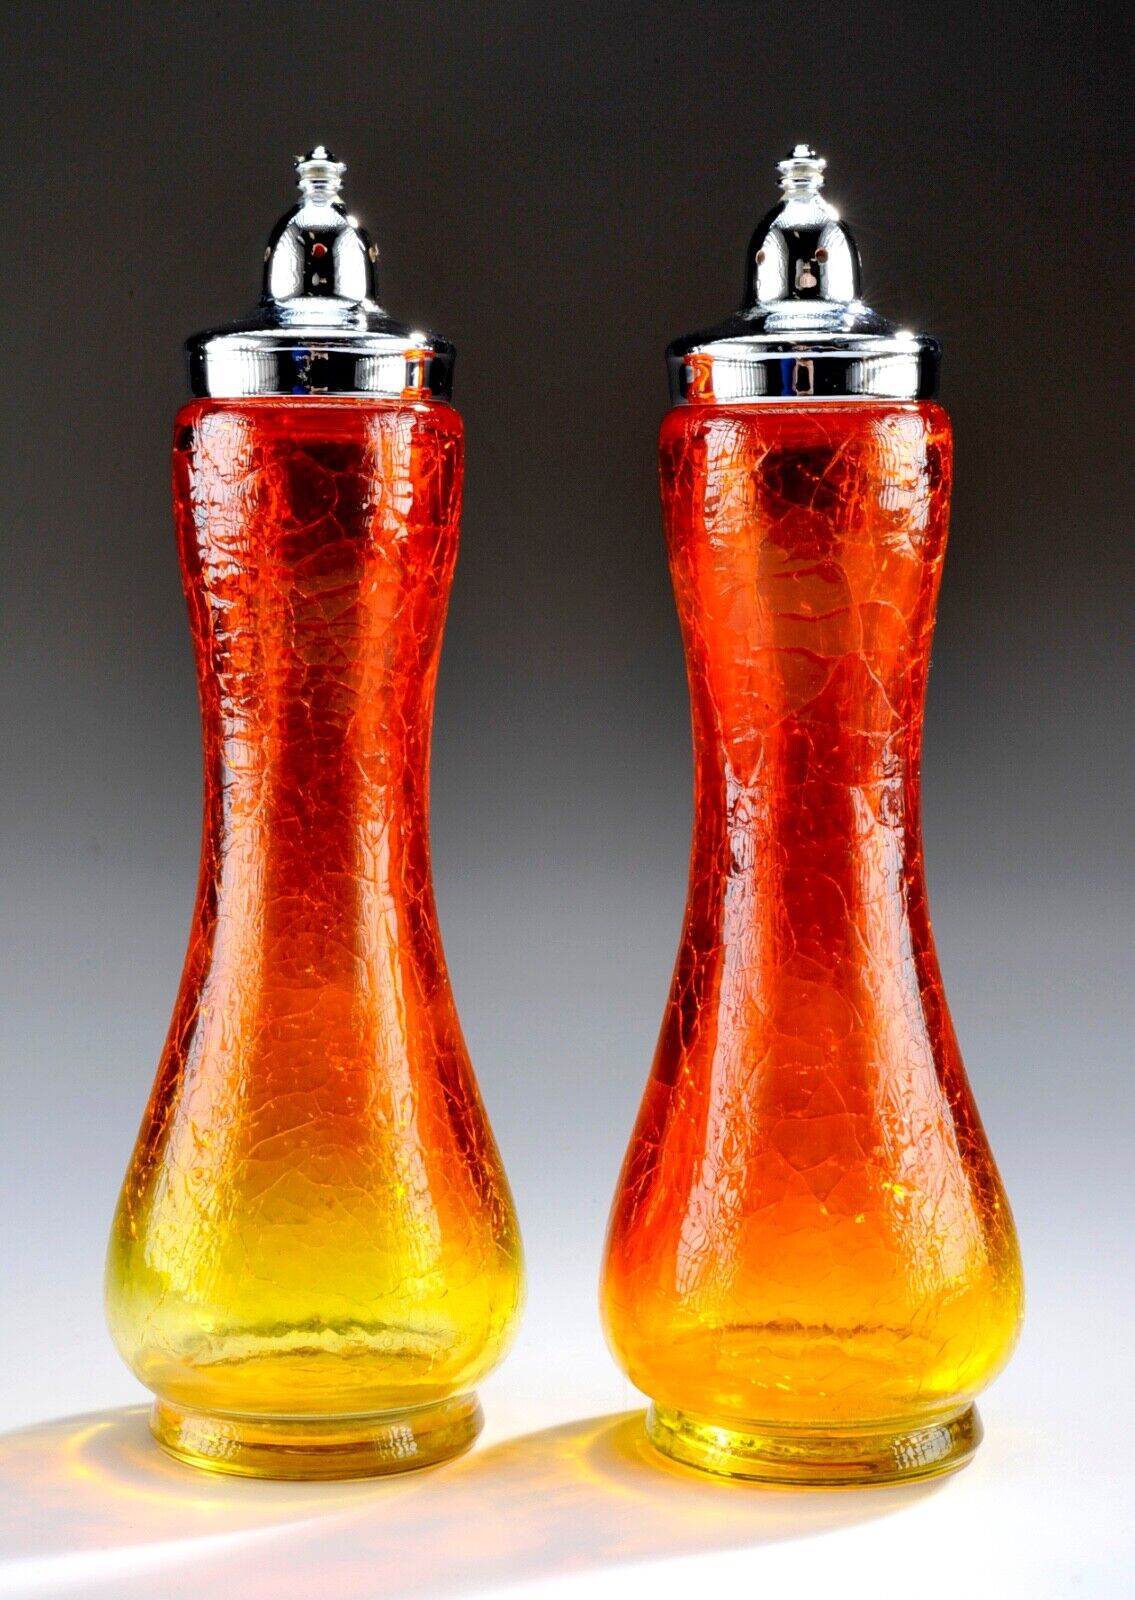 Vintage MCM KANAWHA GLASS CRACKLE AMBERINA SALT & PEPPER SHAKERS - Mid Century